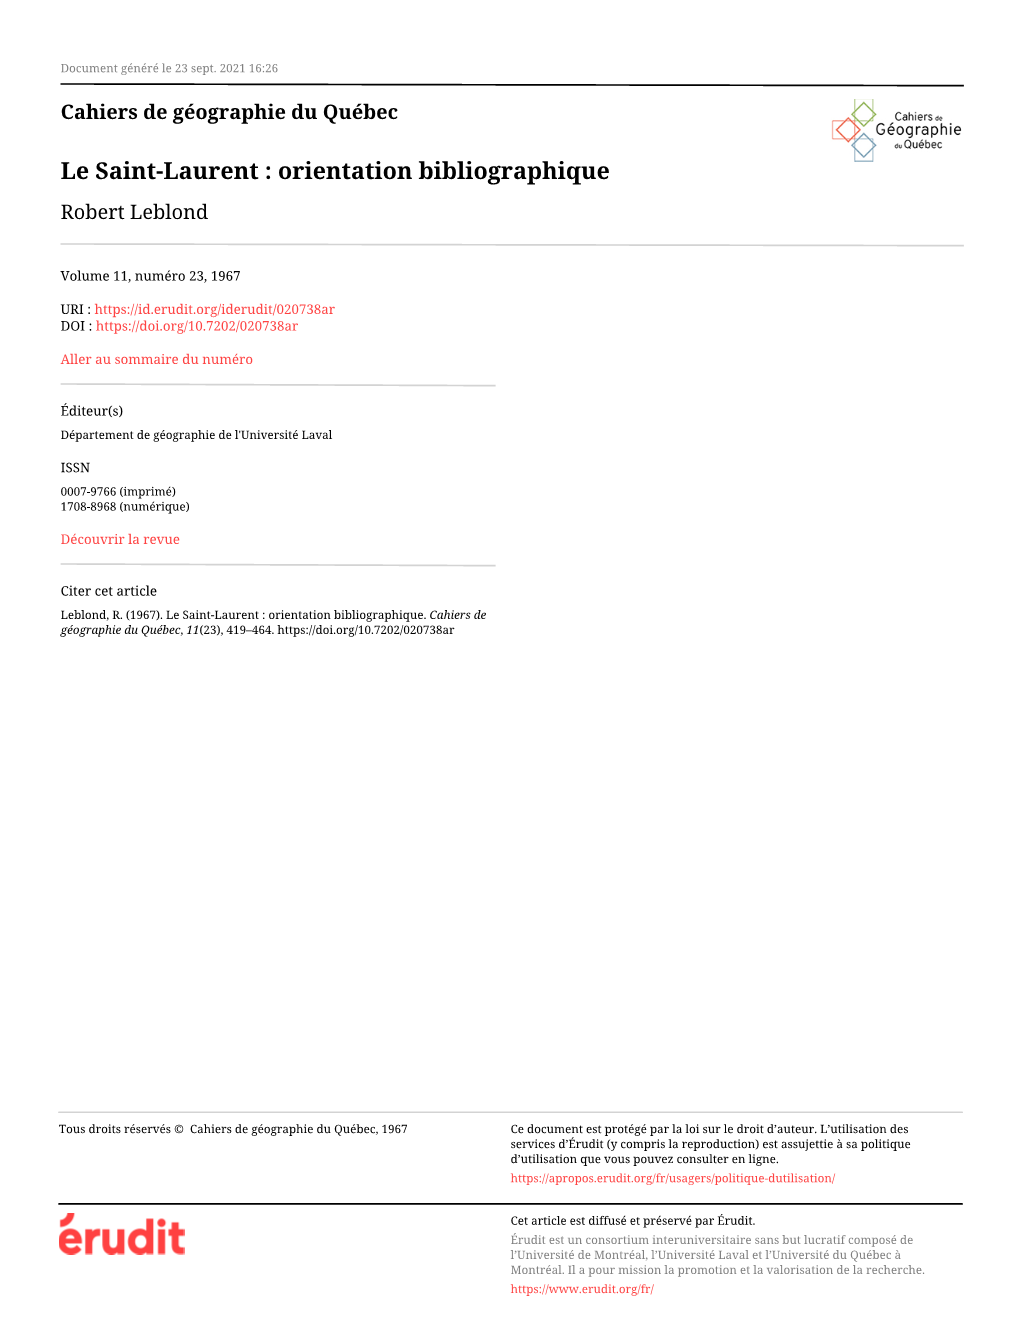 Le Saint-Laurent : Orientation Bibliographique Robert Leblond